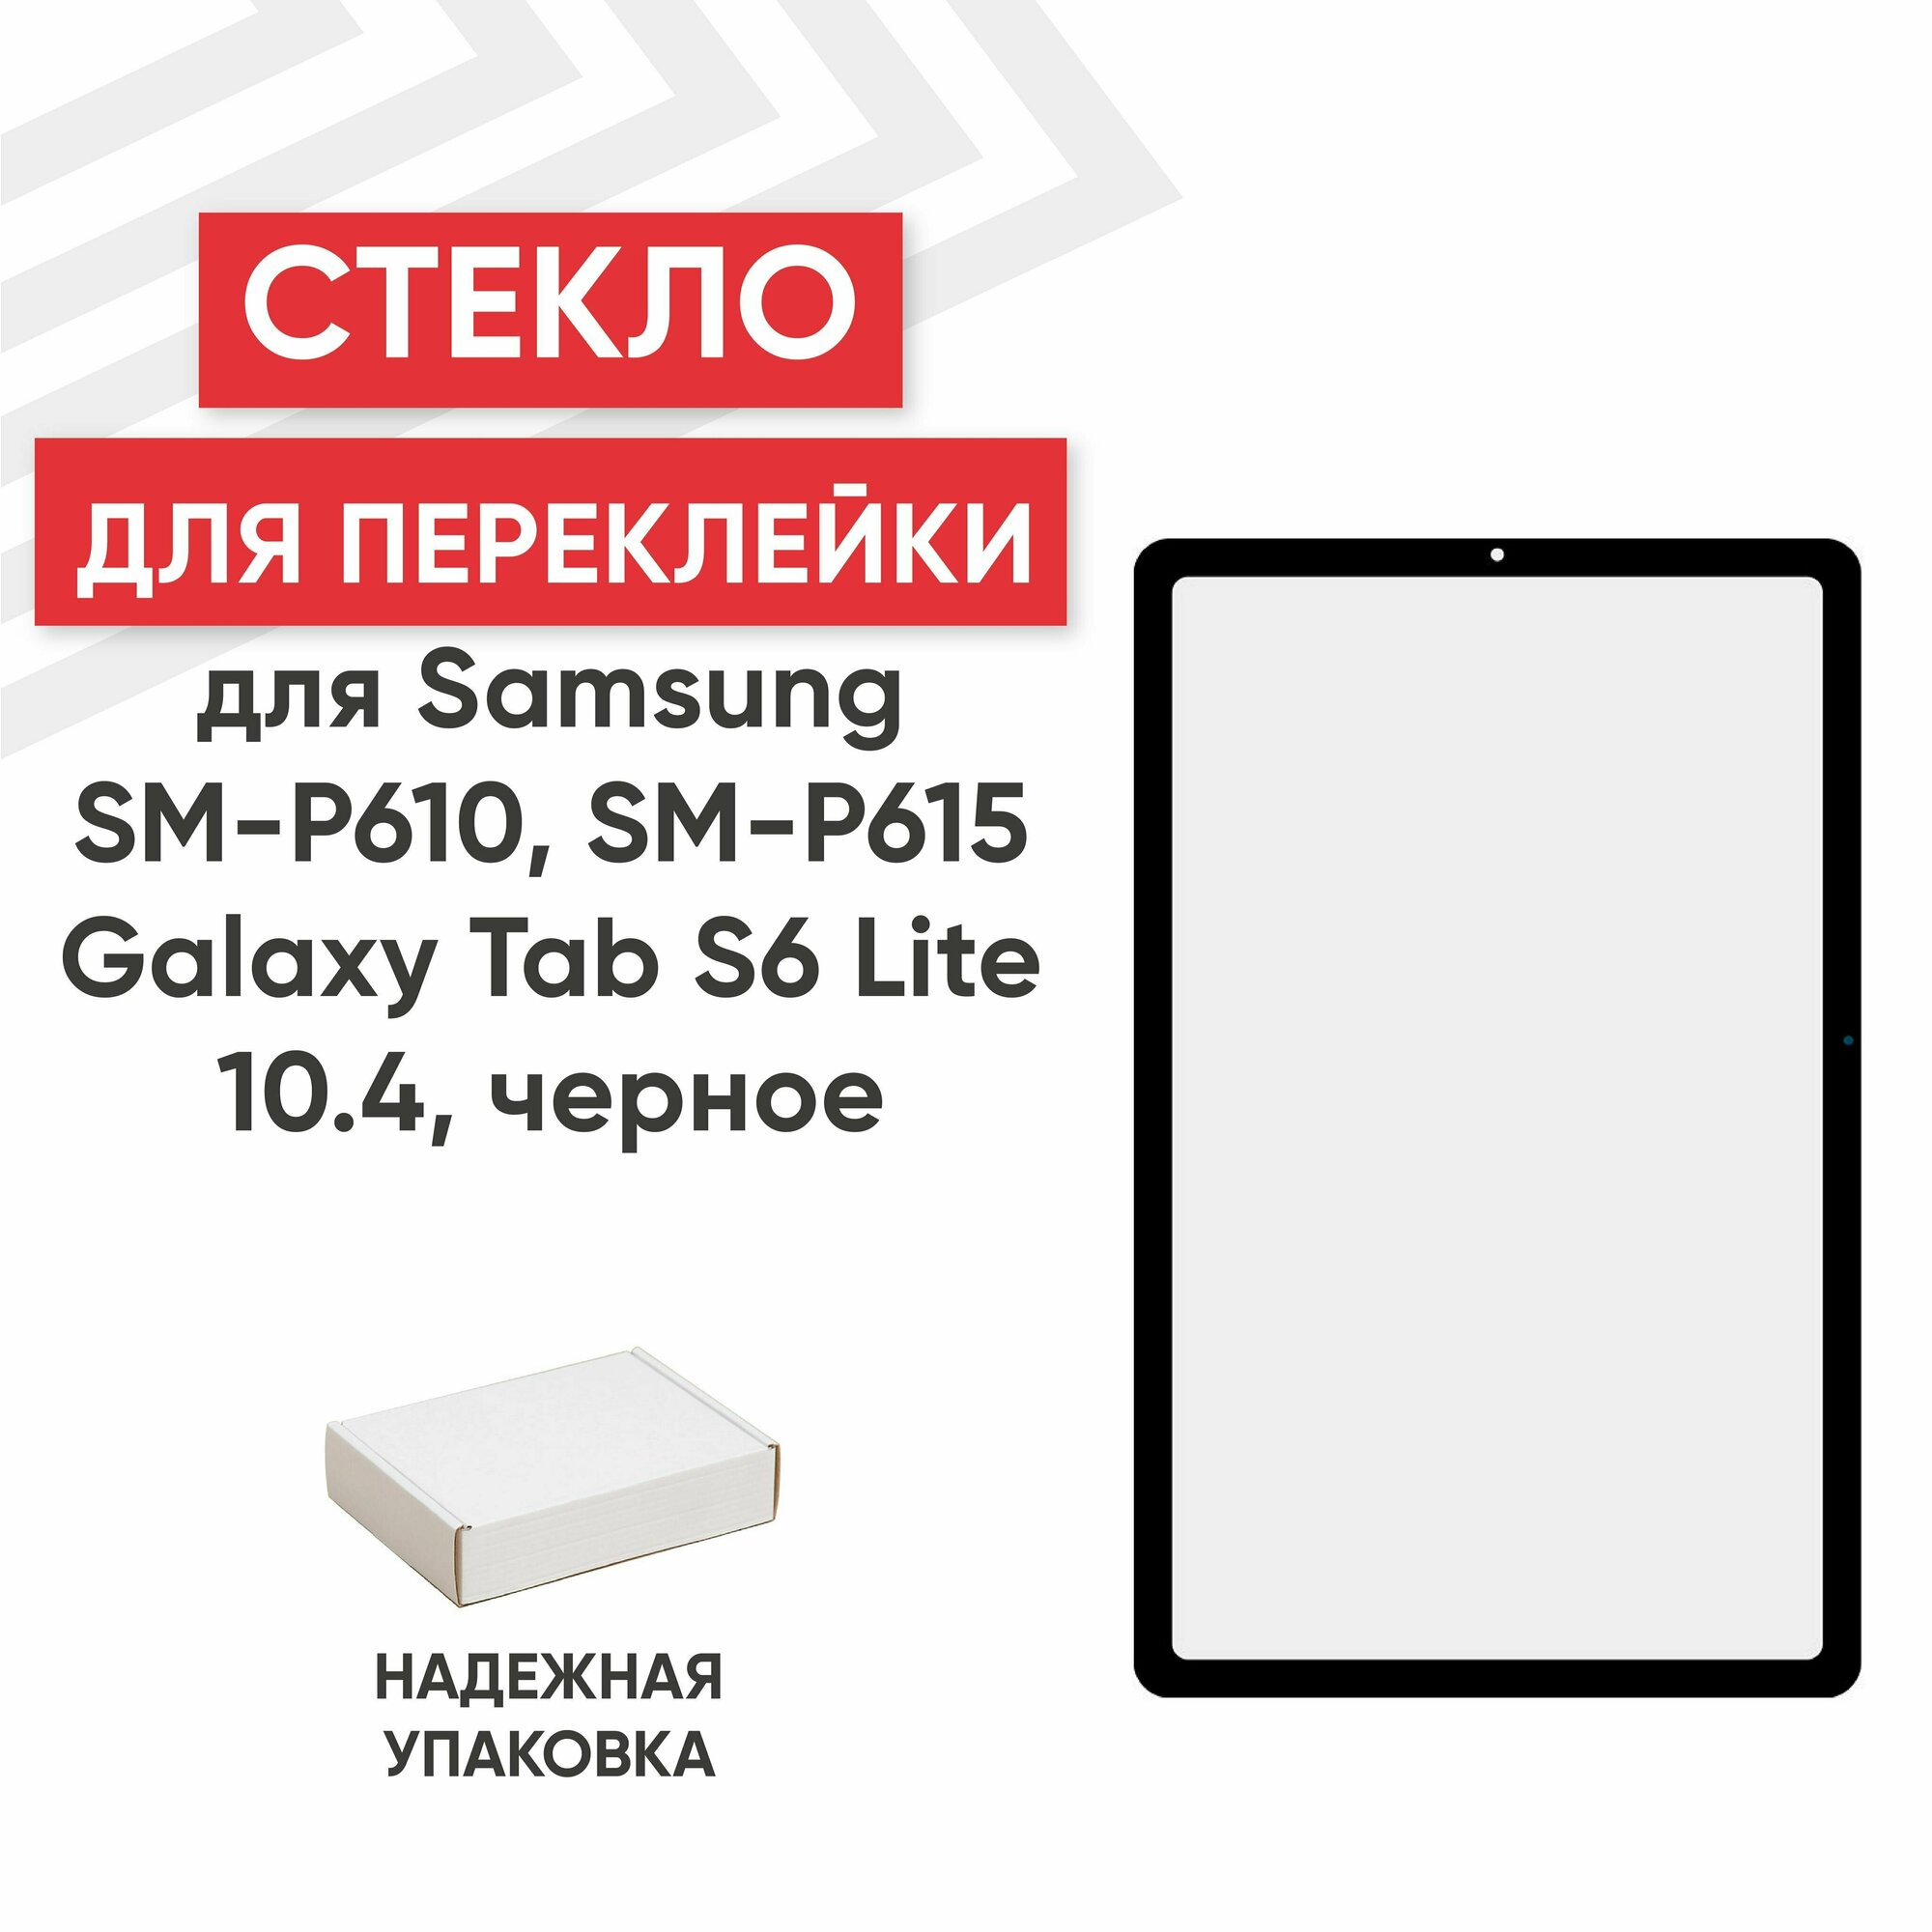 Стекло Ragex для переклейки дисплея для планшета Galaxy Tab S6 Lite 10.4(SM-P610/SM-P615) 10.4" черный